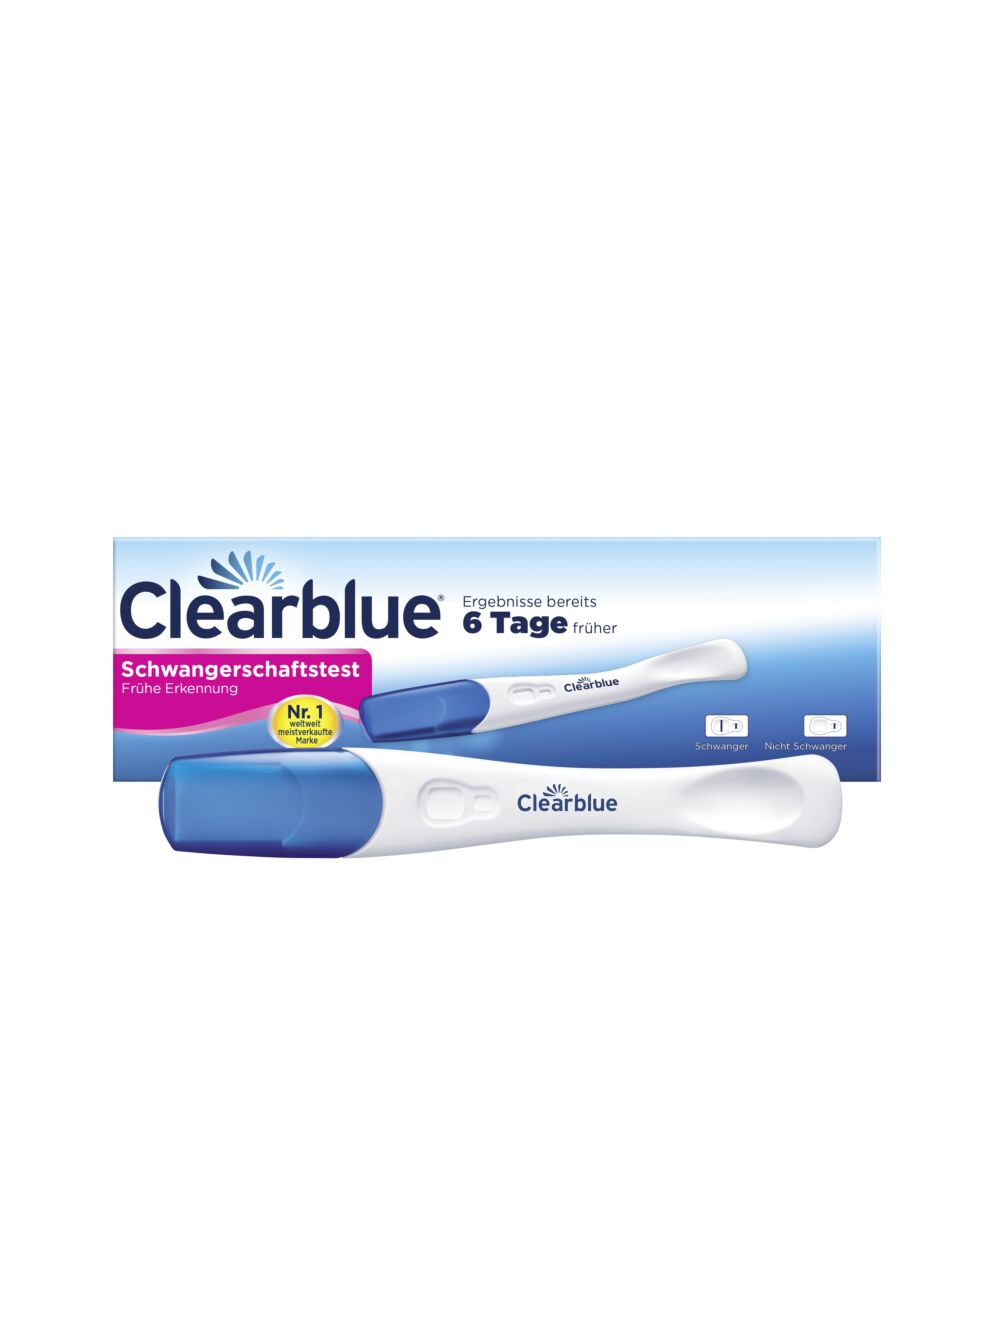 1 x Clearblue schnelle Erkennung 1 x Clearblue Schwangerschaftstest Digital 